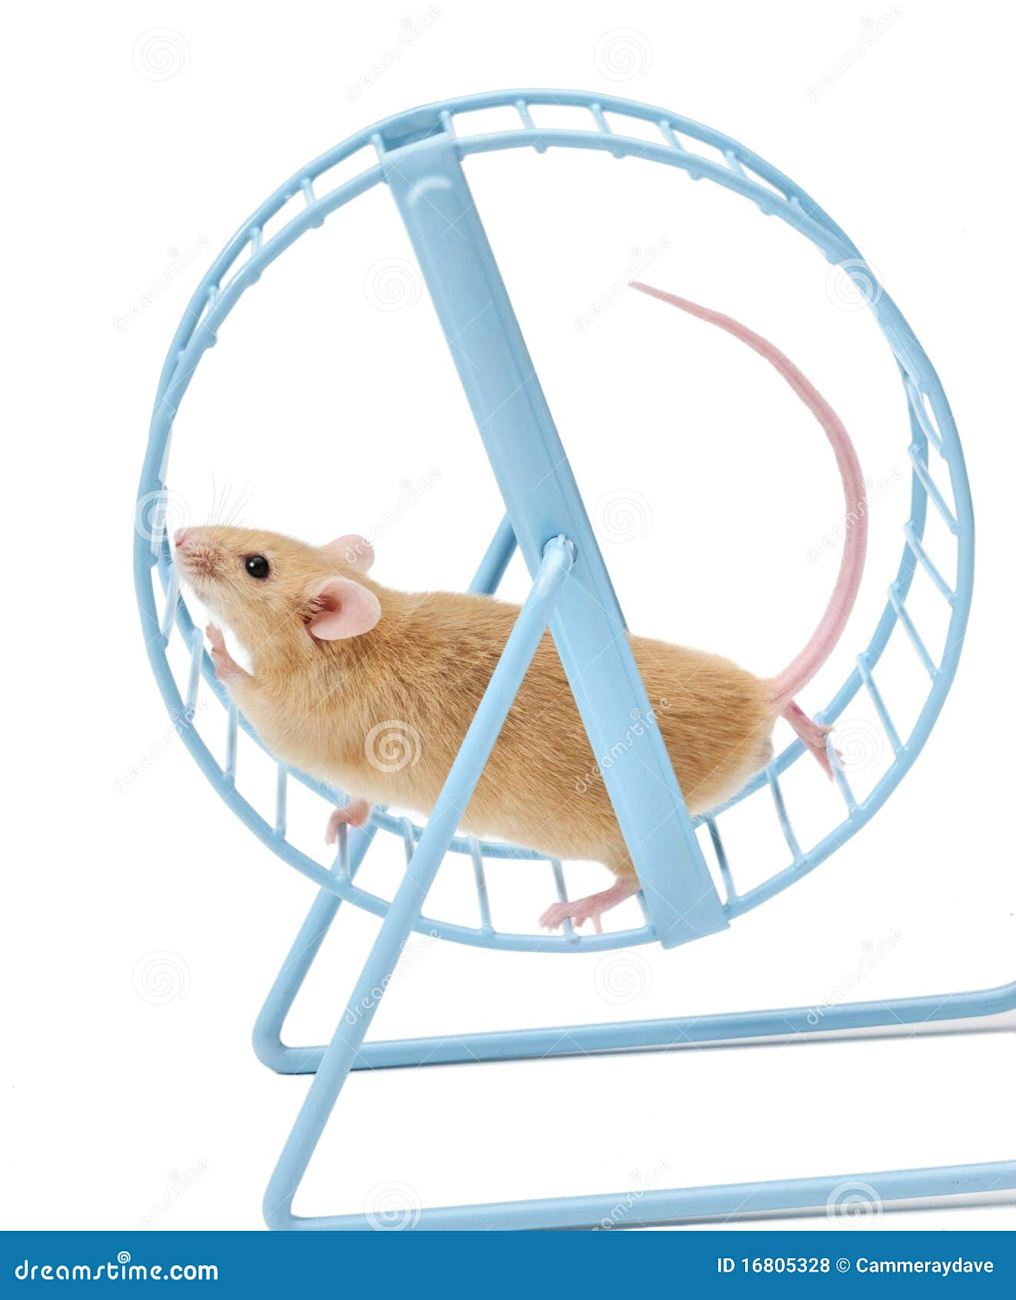 mouse-exercising-hamster-wheel-16805328.jpg